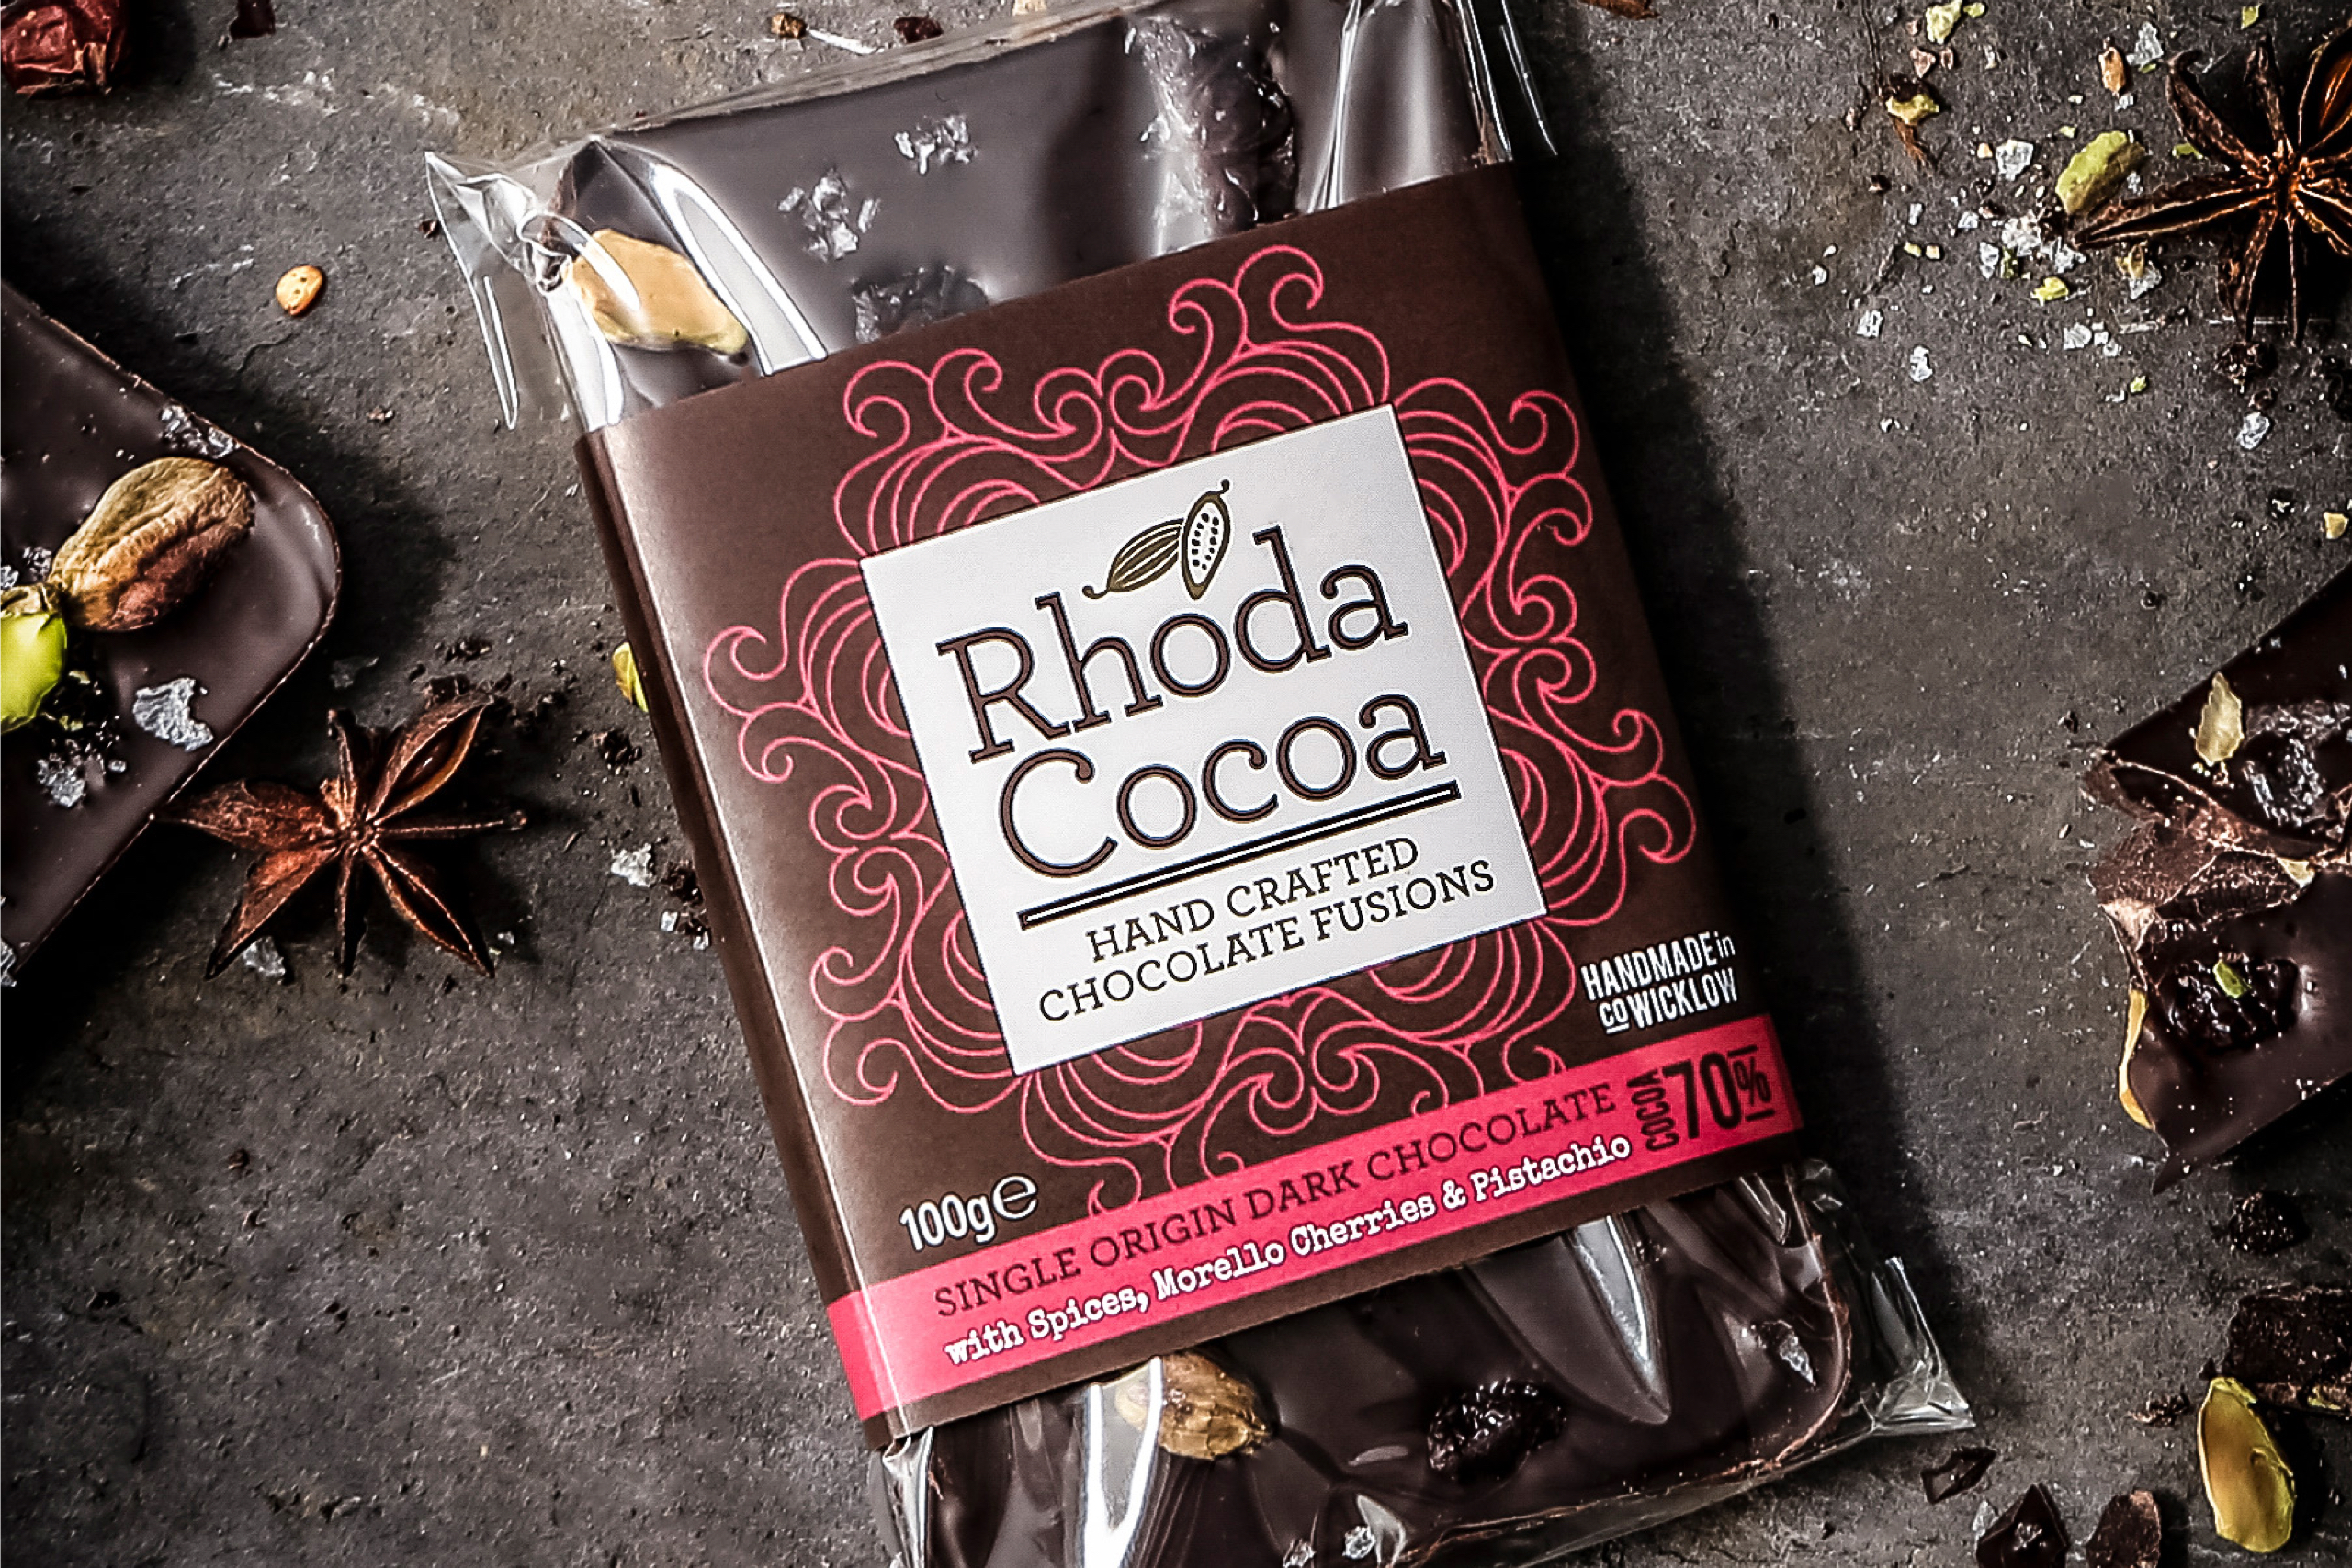 Rhoda Cocoa